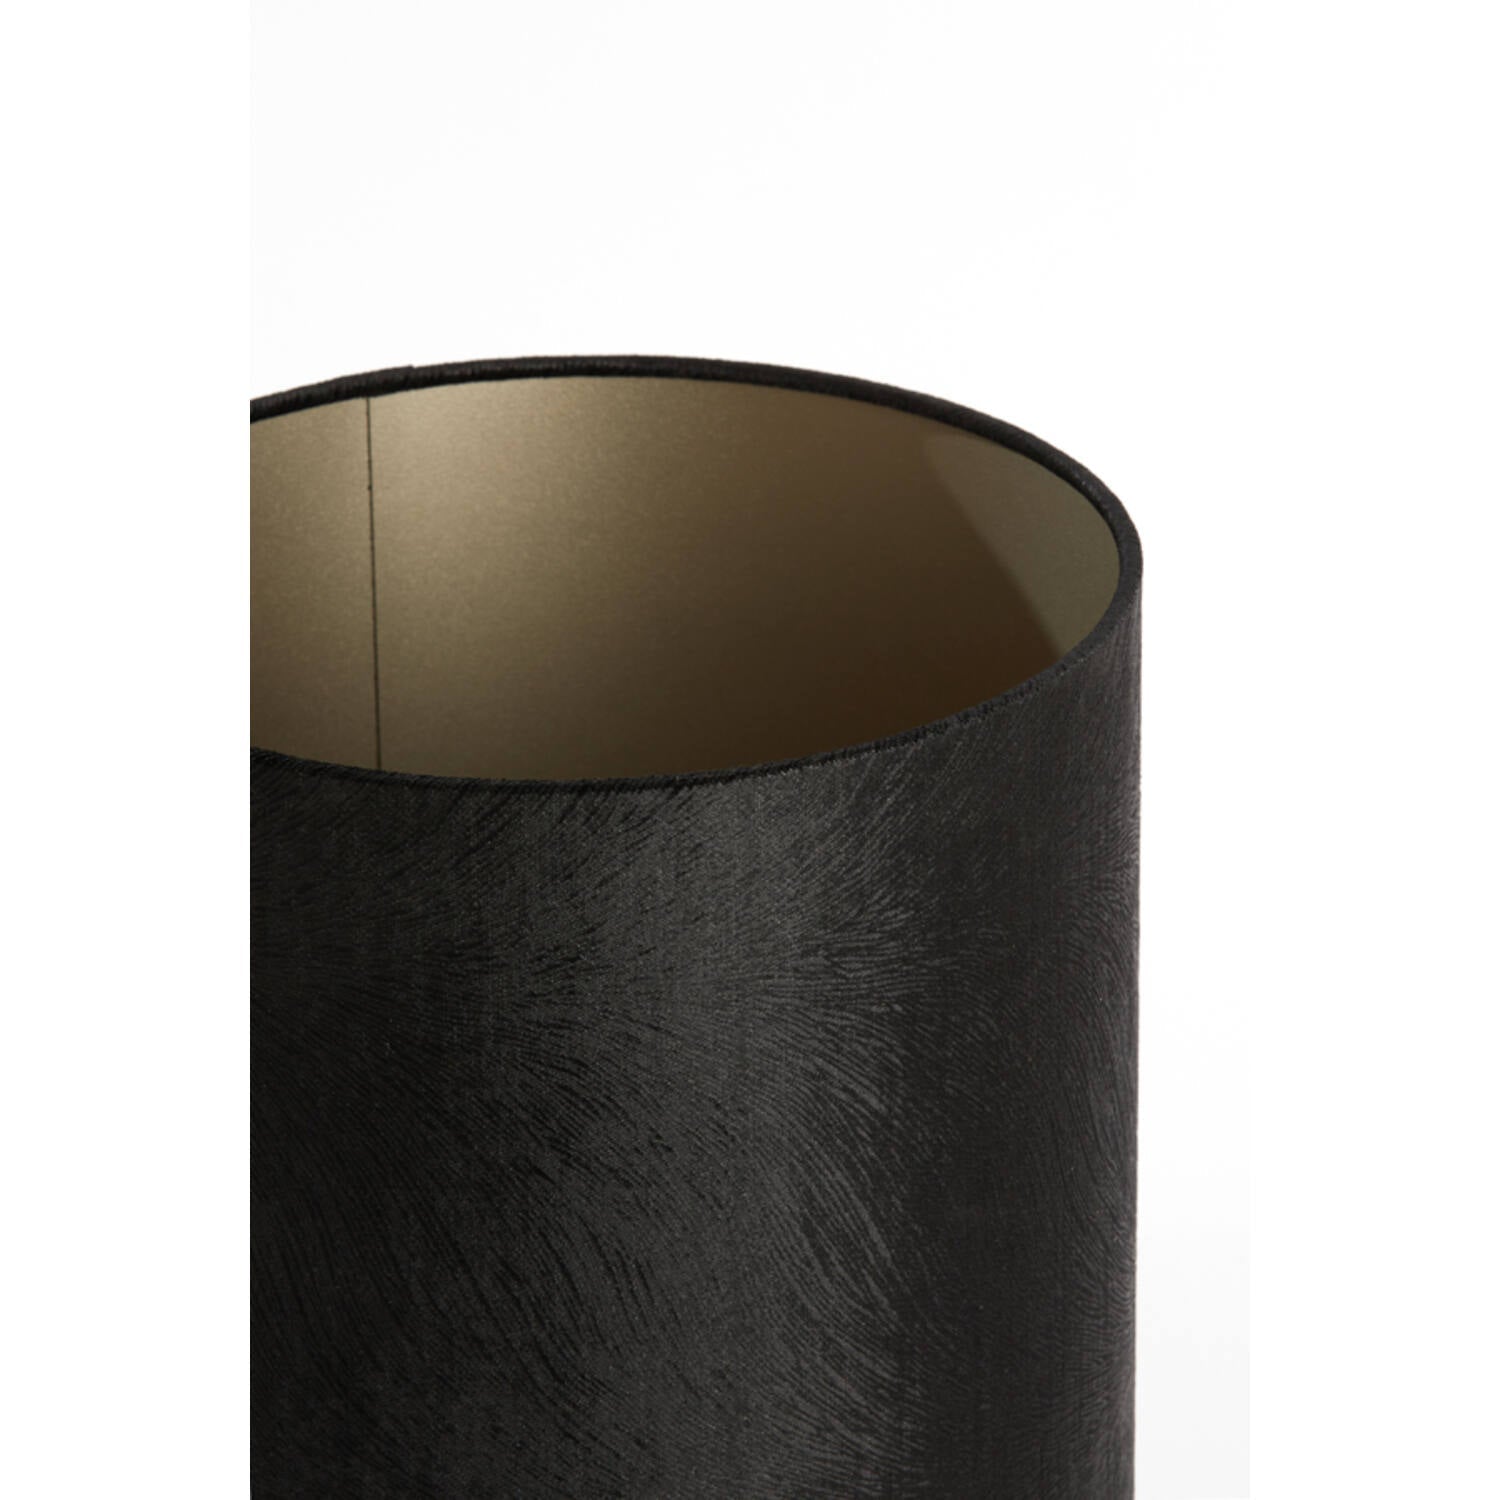 Lubis Shade 30-30-42 Cylinder - Black Finish